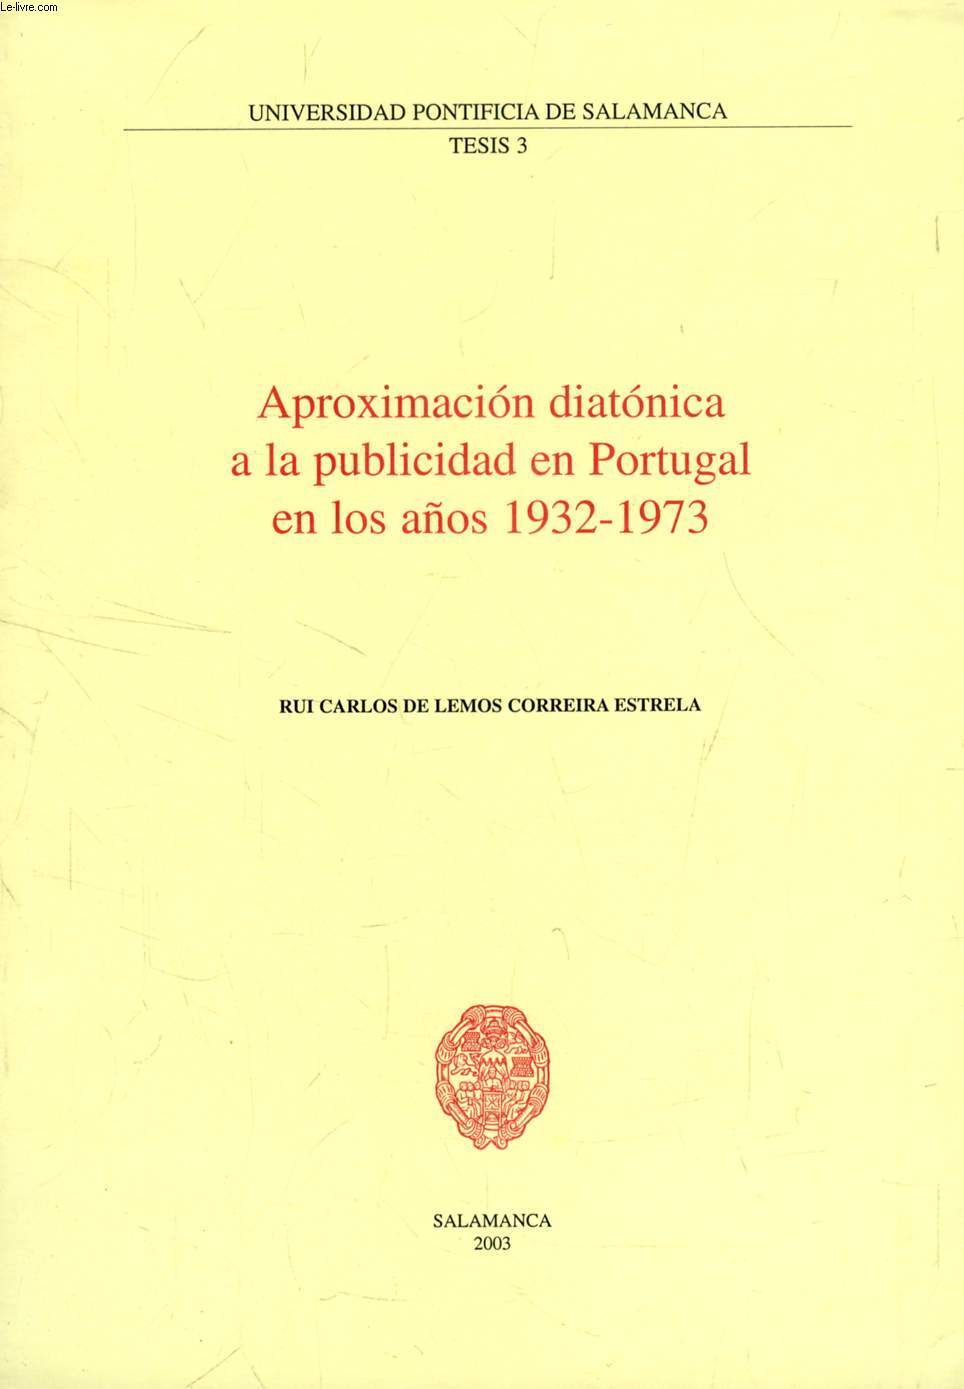 APROXIMACION DIATONICA A LA PUBLICIDAD EN PORTUGAL EN LOS AOS 1932-1973 (EXTRACTO DE TESIS)